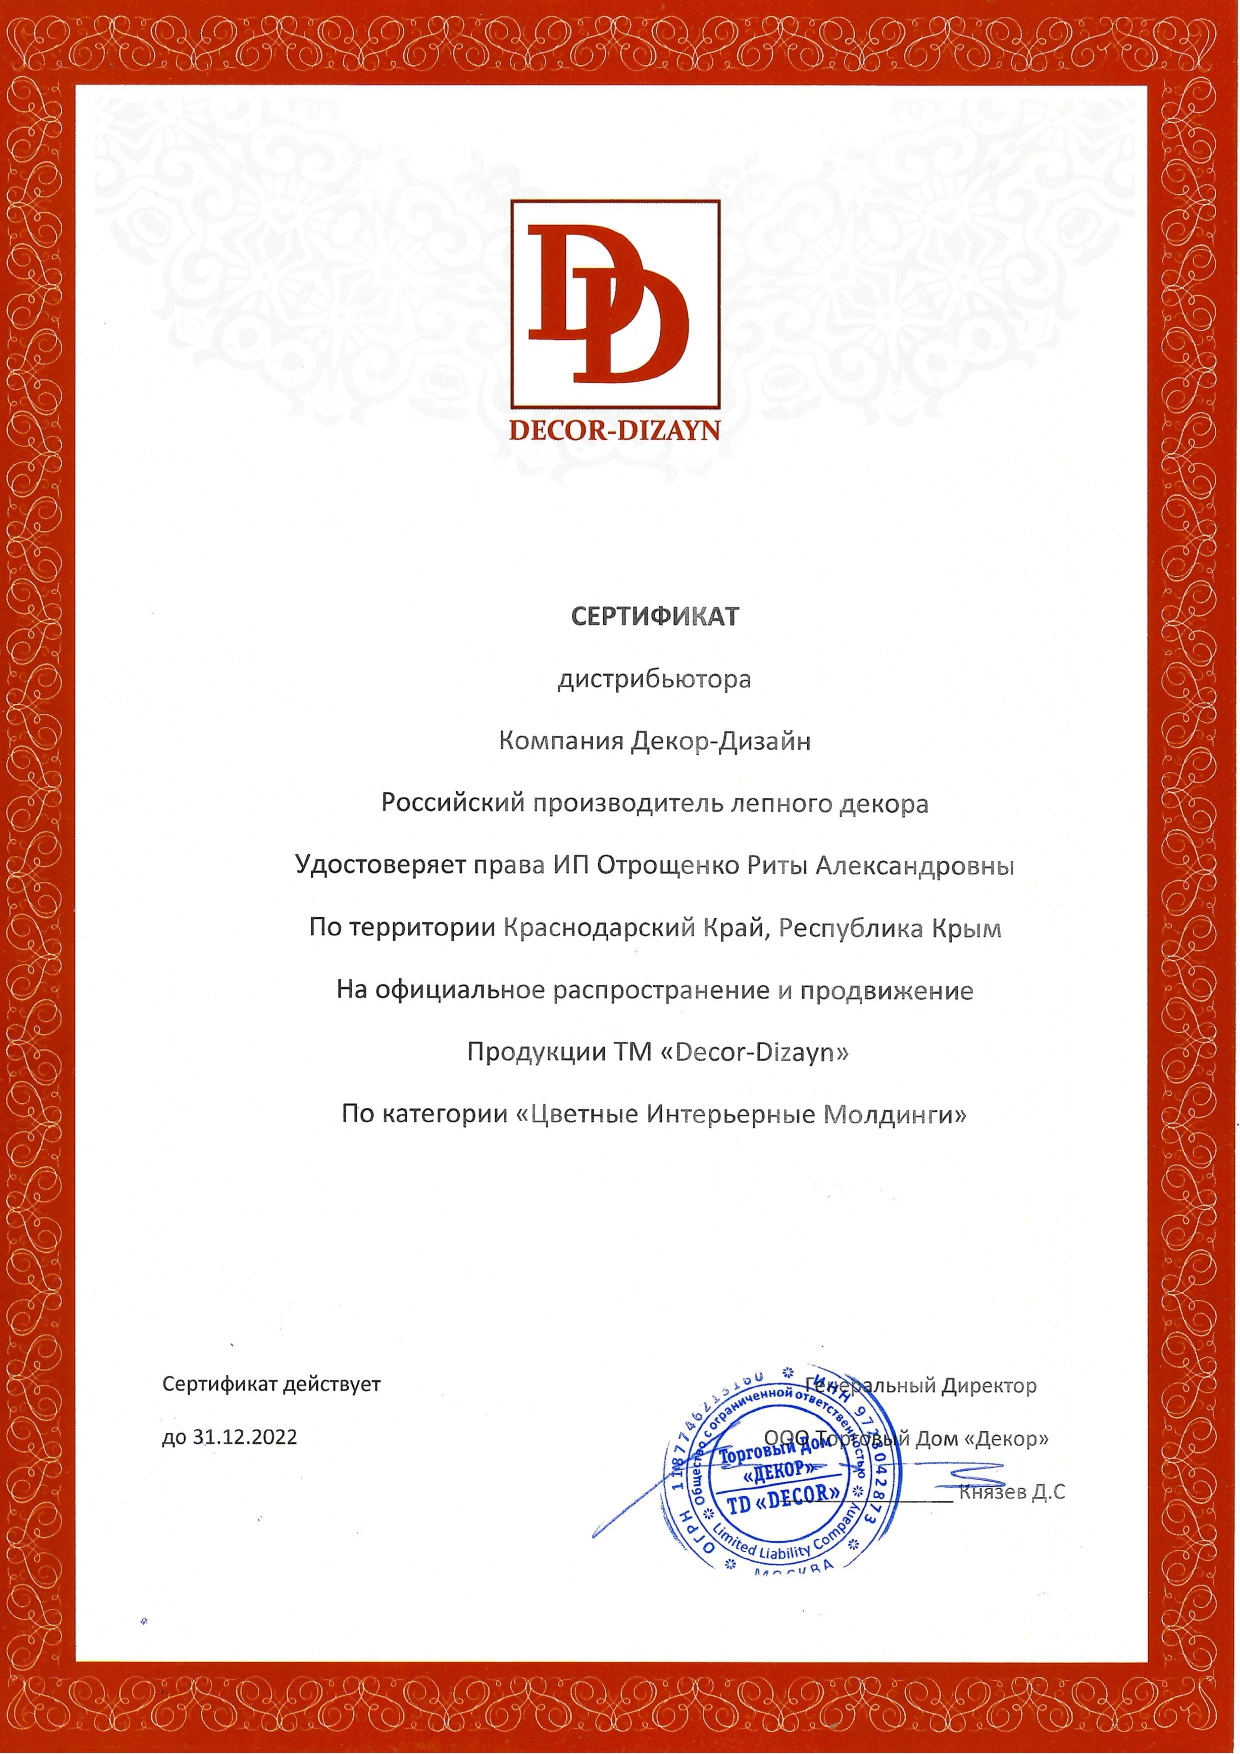 Сертификат DECOR-DIZAYN